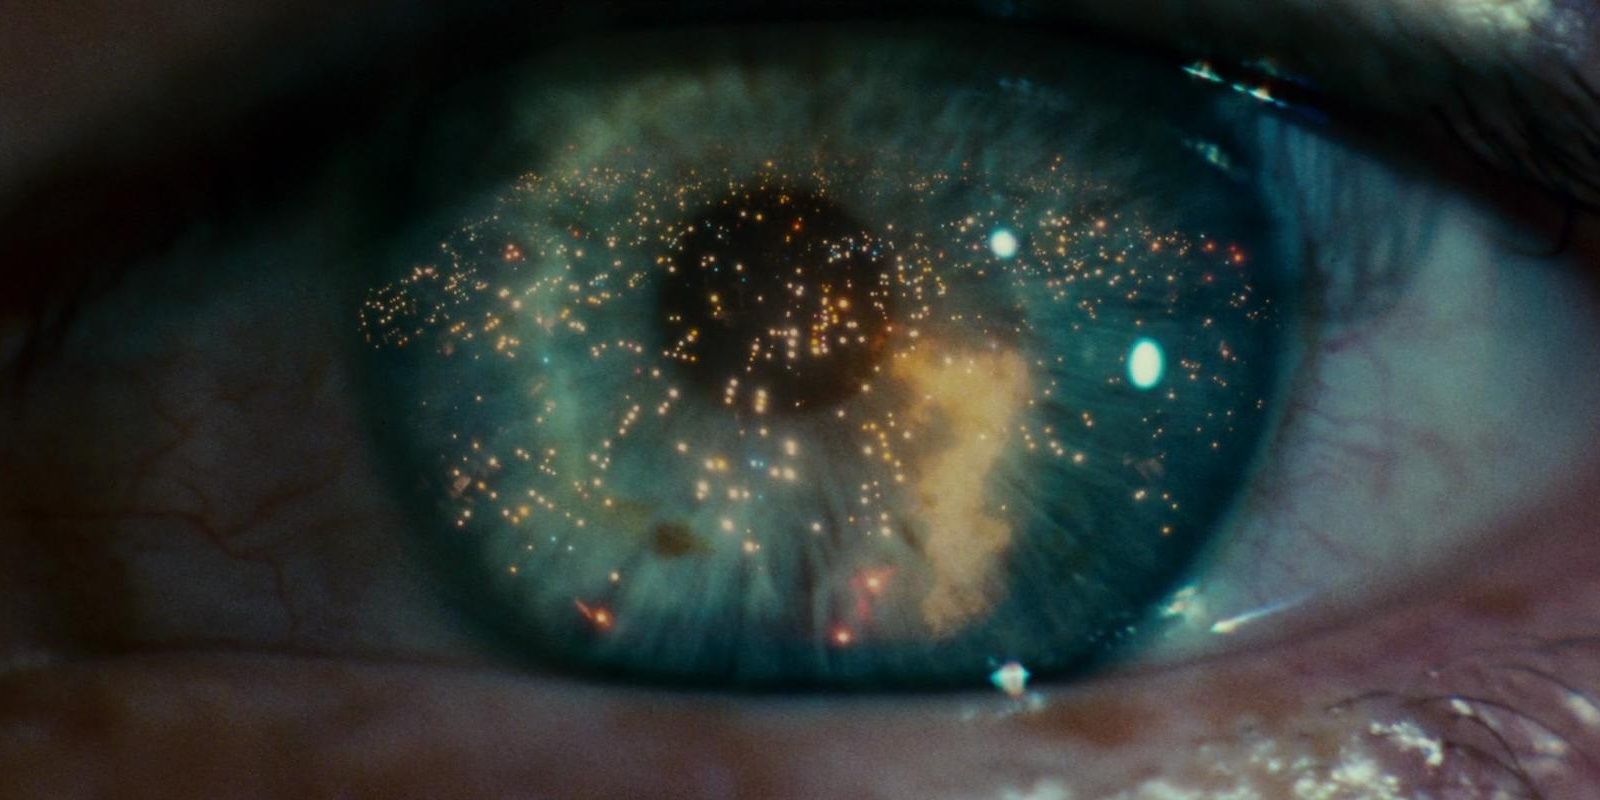 The shining eye effect in Blade Runner